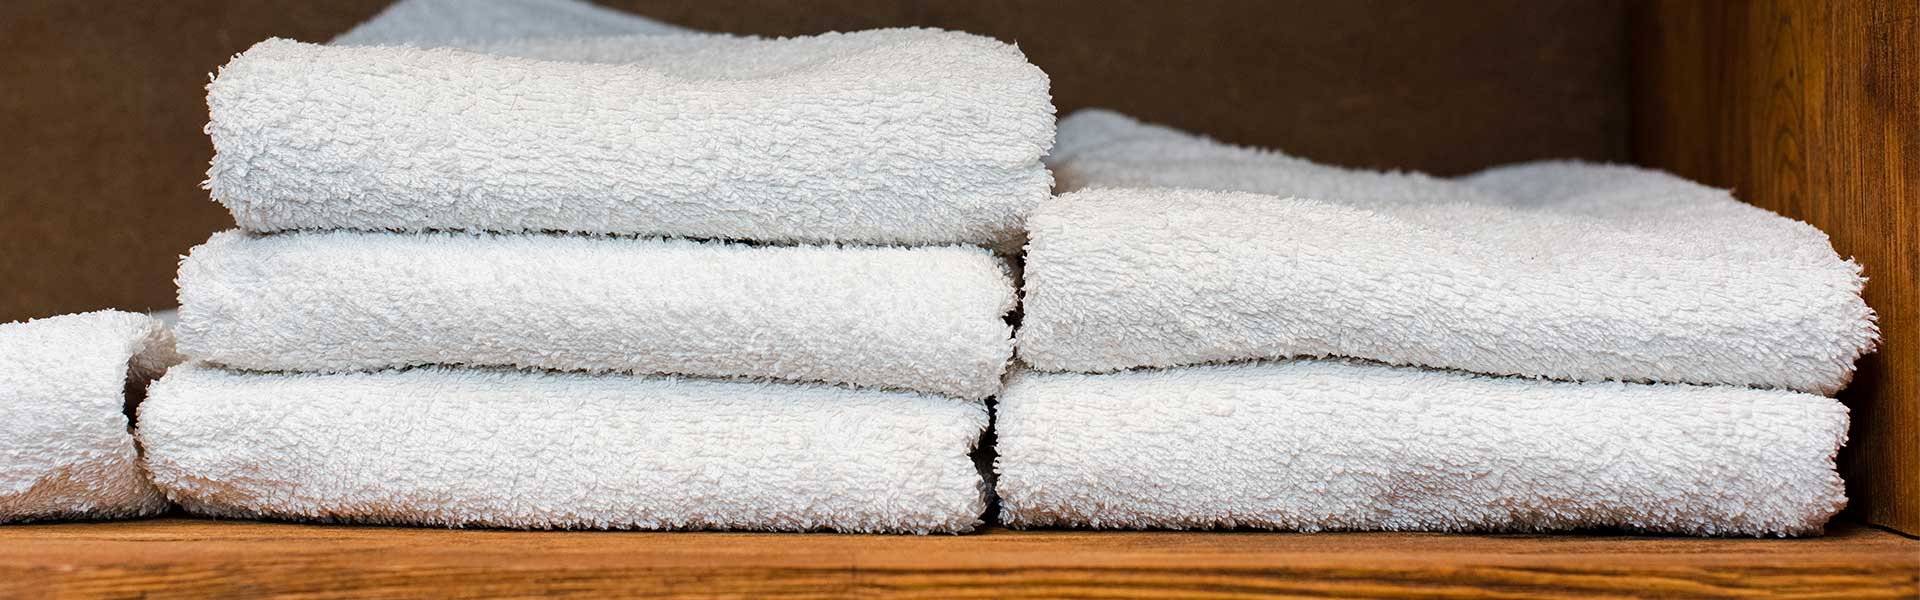 Gramaje de las toallas: ¿es importante?